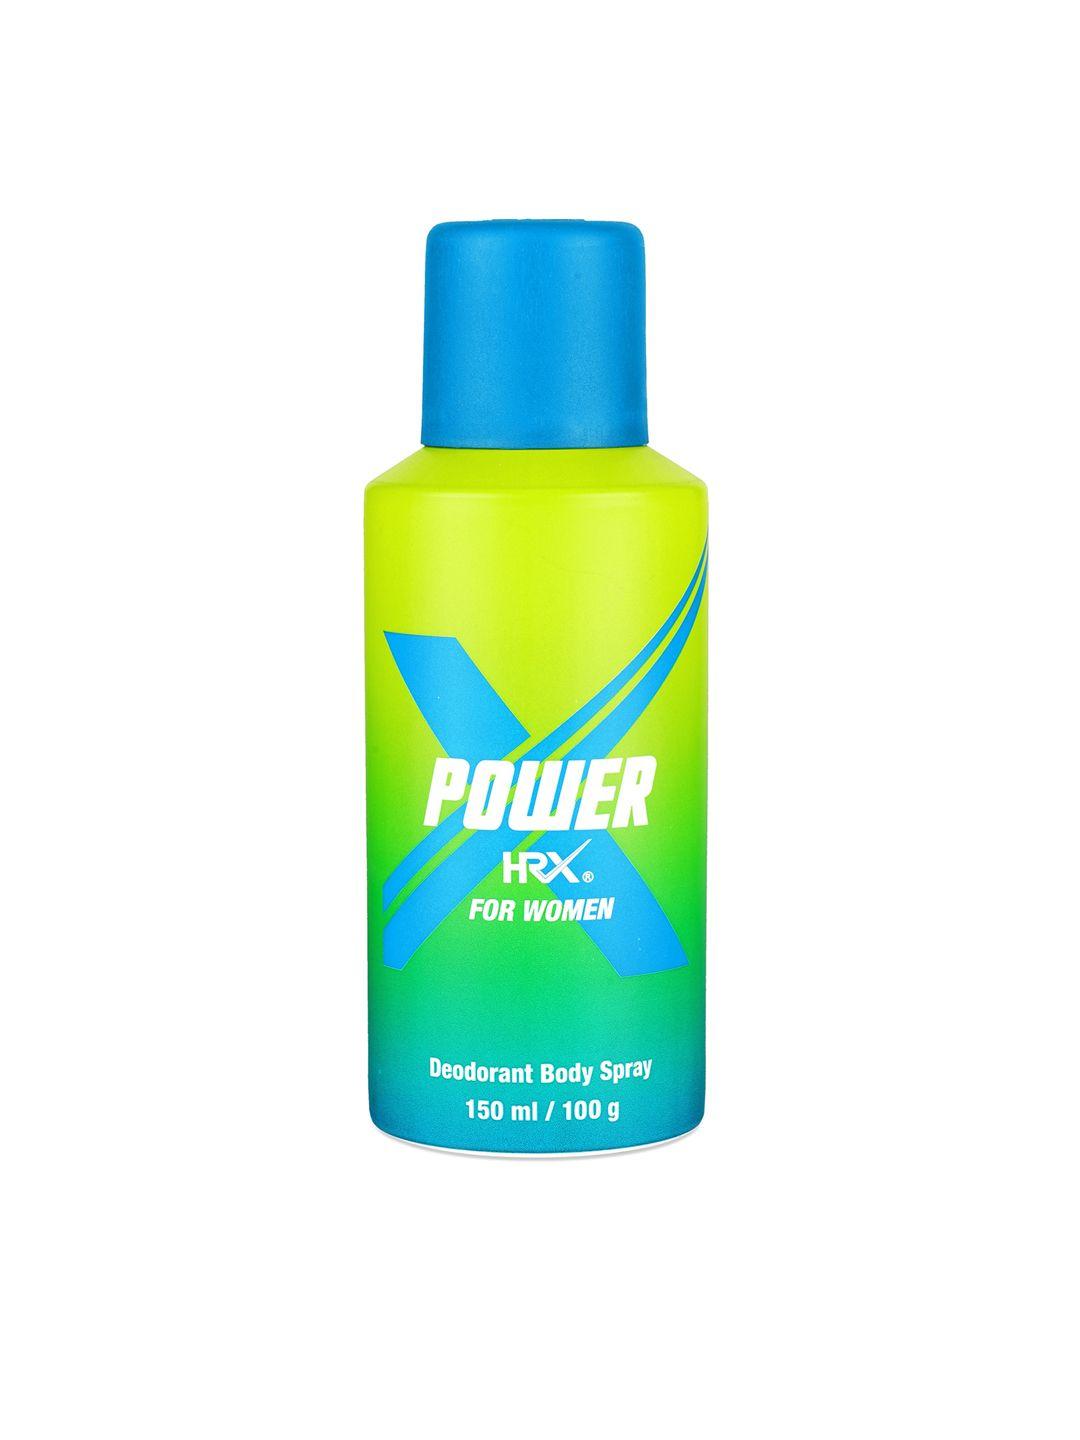 hrx women power deodorant body spray - 150 ml